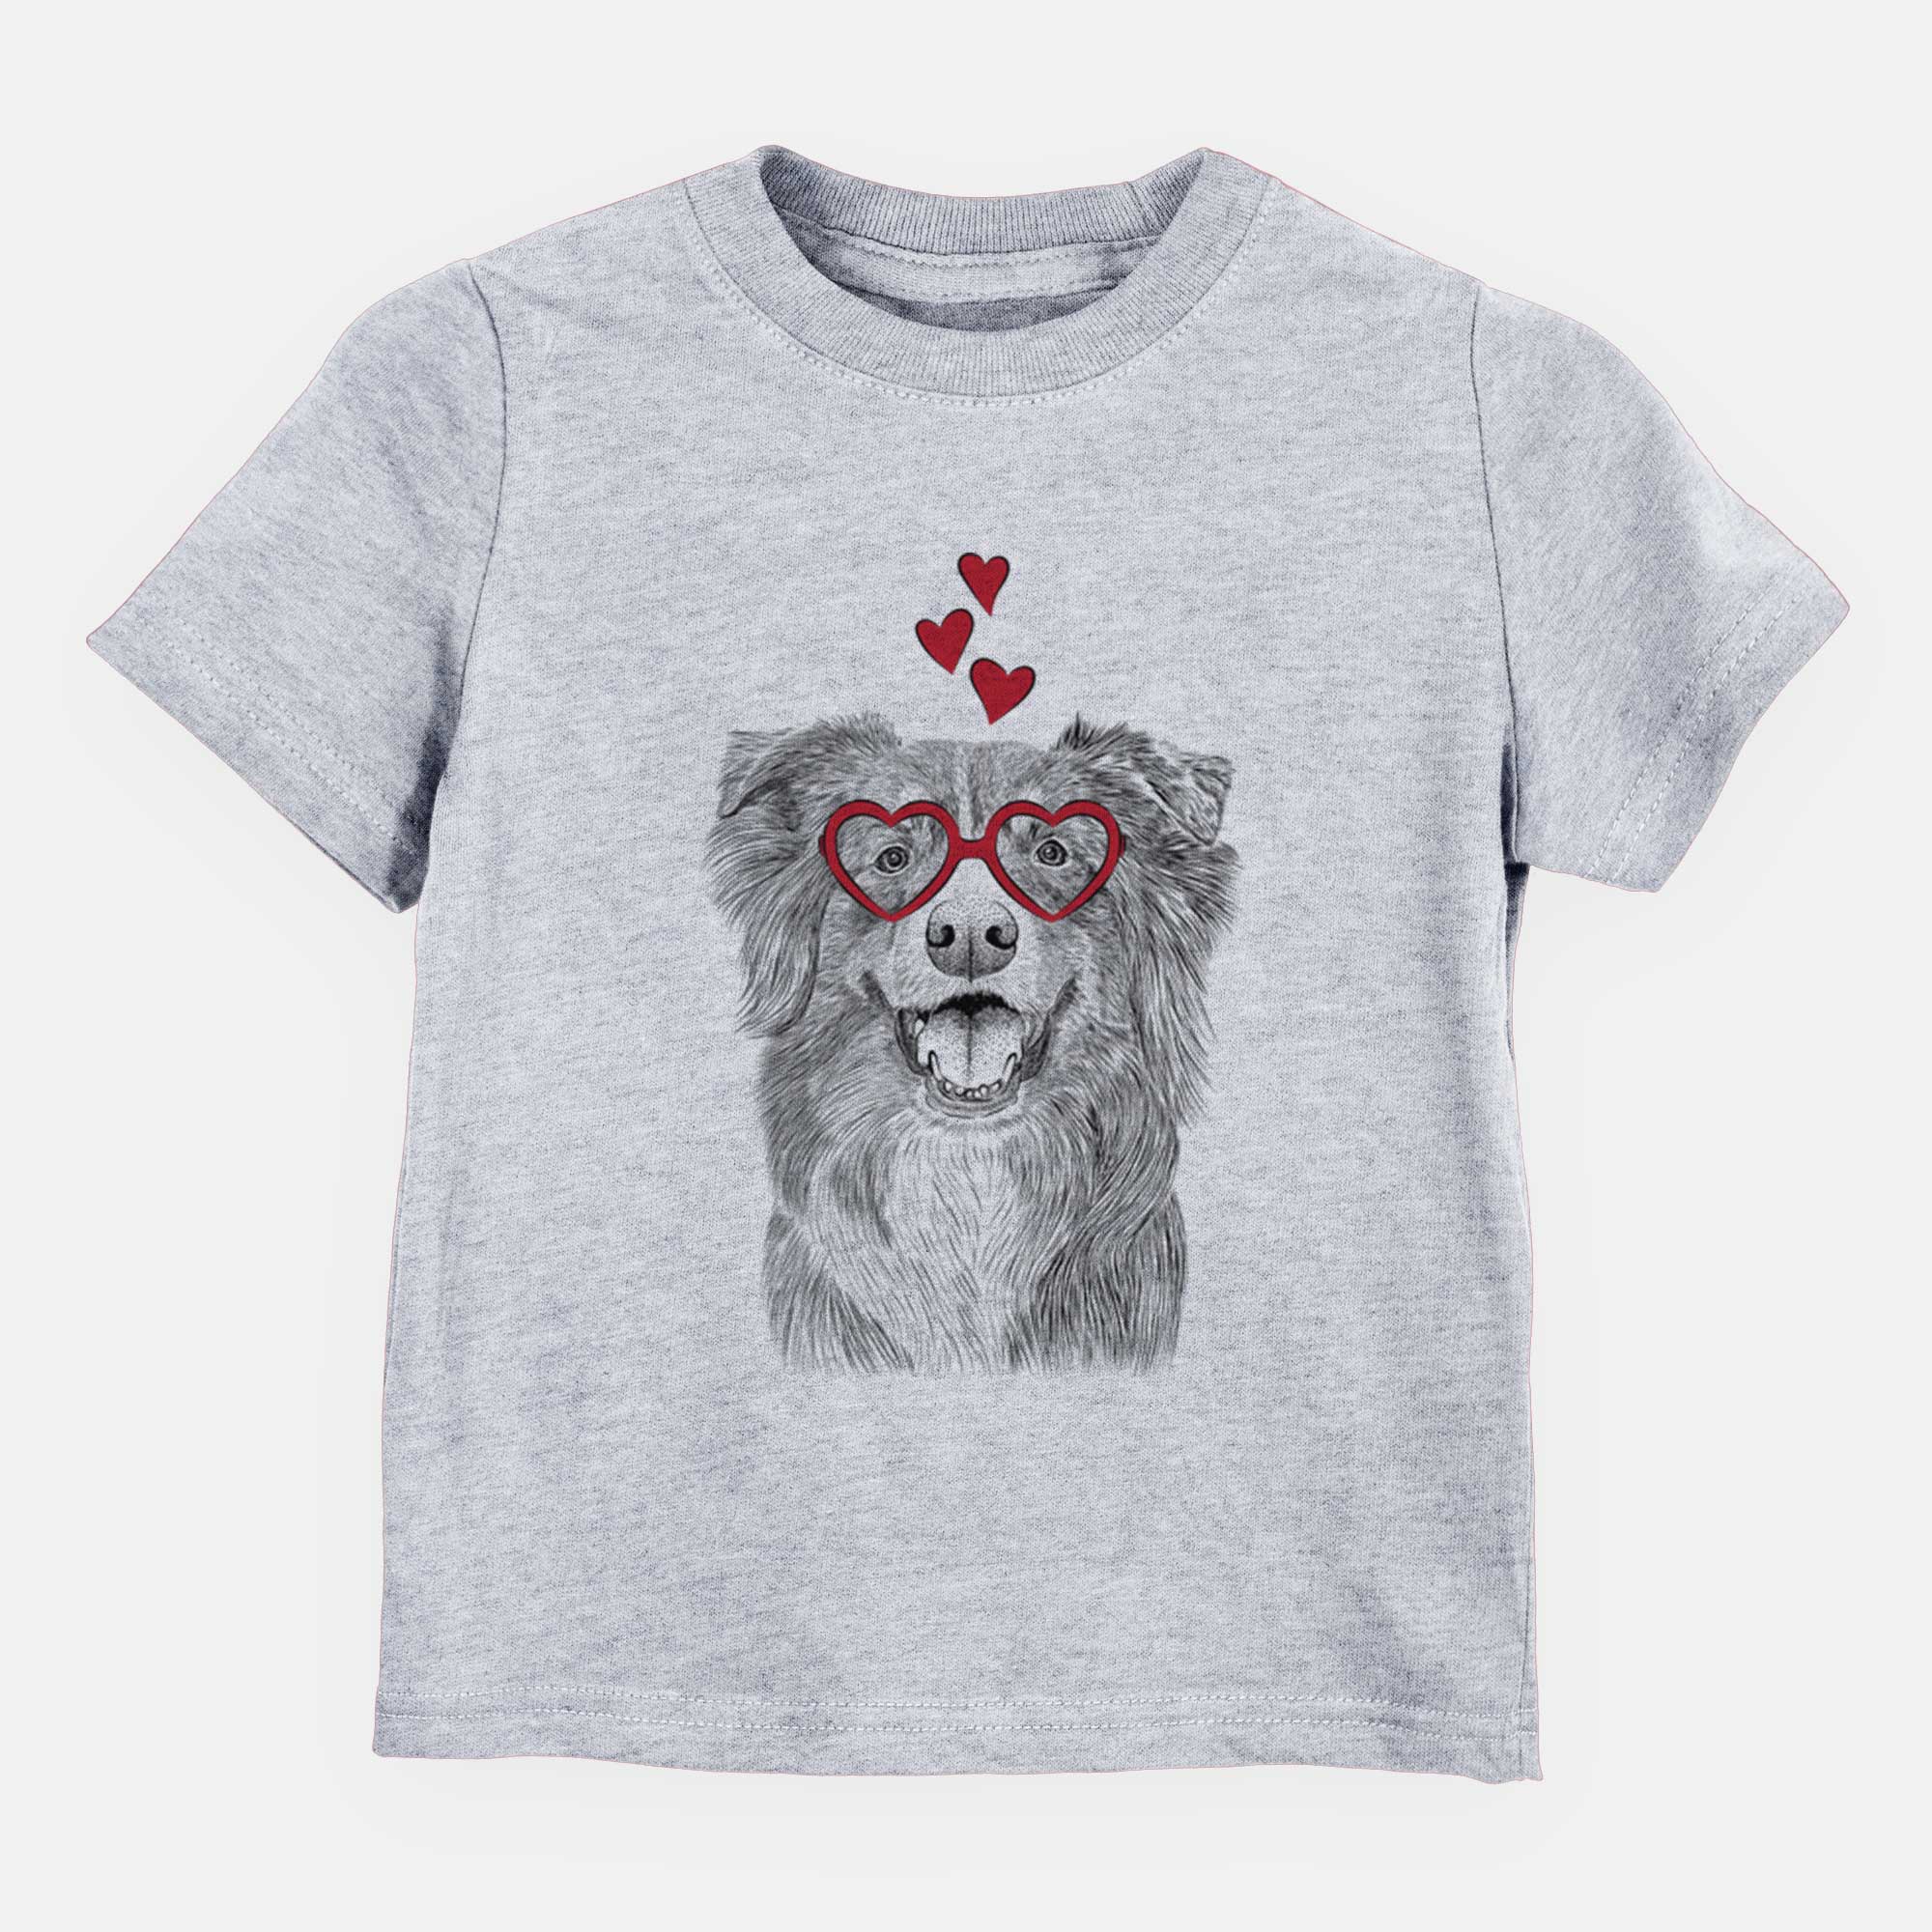 Valentine Aussie Parker the Australian Shepherd - Kids/Youth/Toddler Shirt